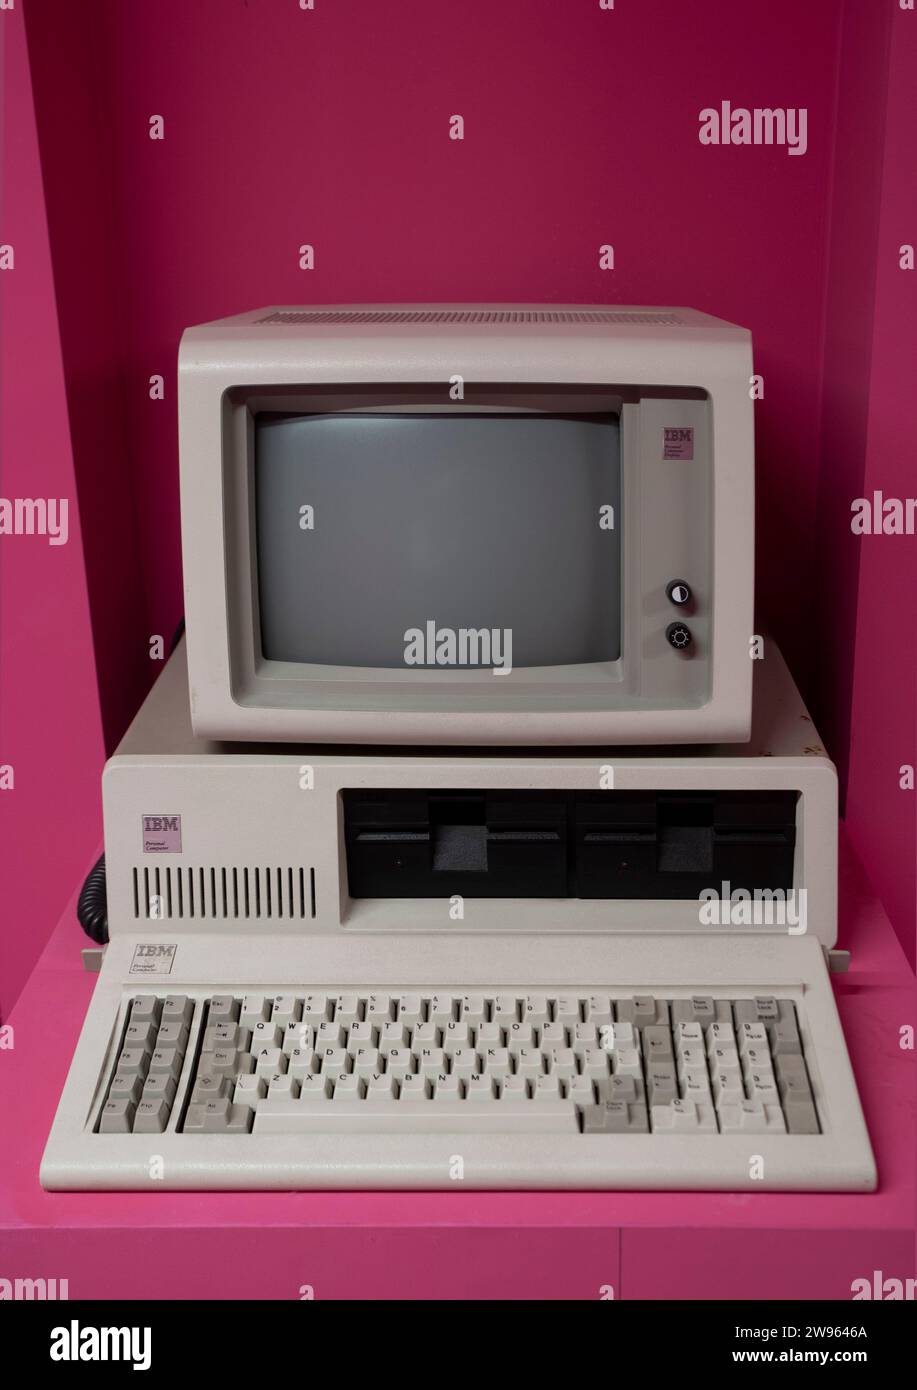 IBM Personal Computer (1981) ist der erste Mikrocomputer der IBM PC-Modellreihe. Rosafarbener Hintergrund... Stockfoto